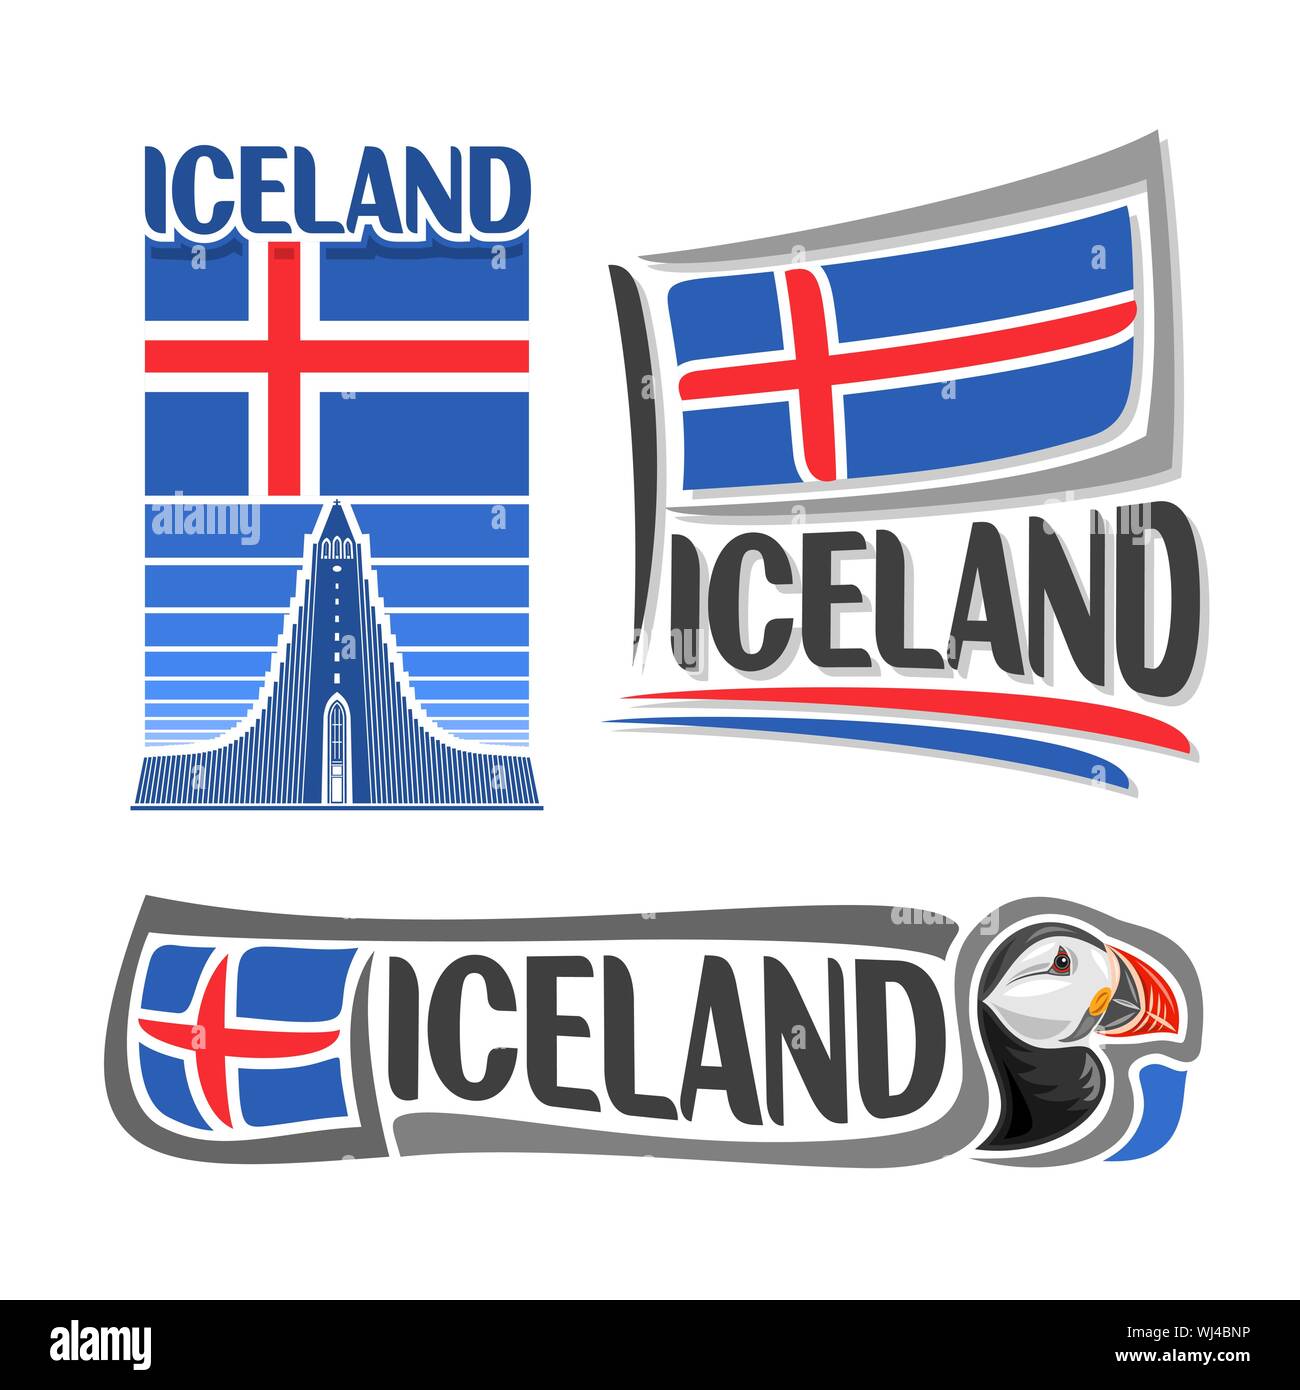 Logo d'illustration vectorielle pour l'Islande, composé de 3 illustrations isolées : icelandic national drapeau sur l'image, symbole de l'Icel Hallgrimskirkja Illustration de Vecteur